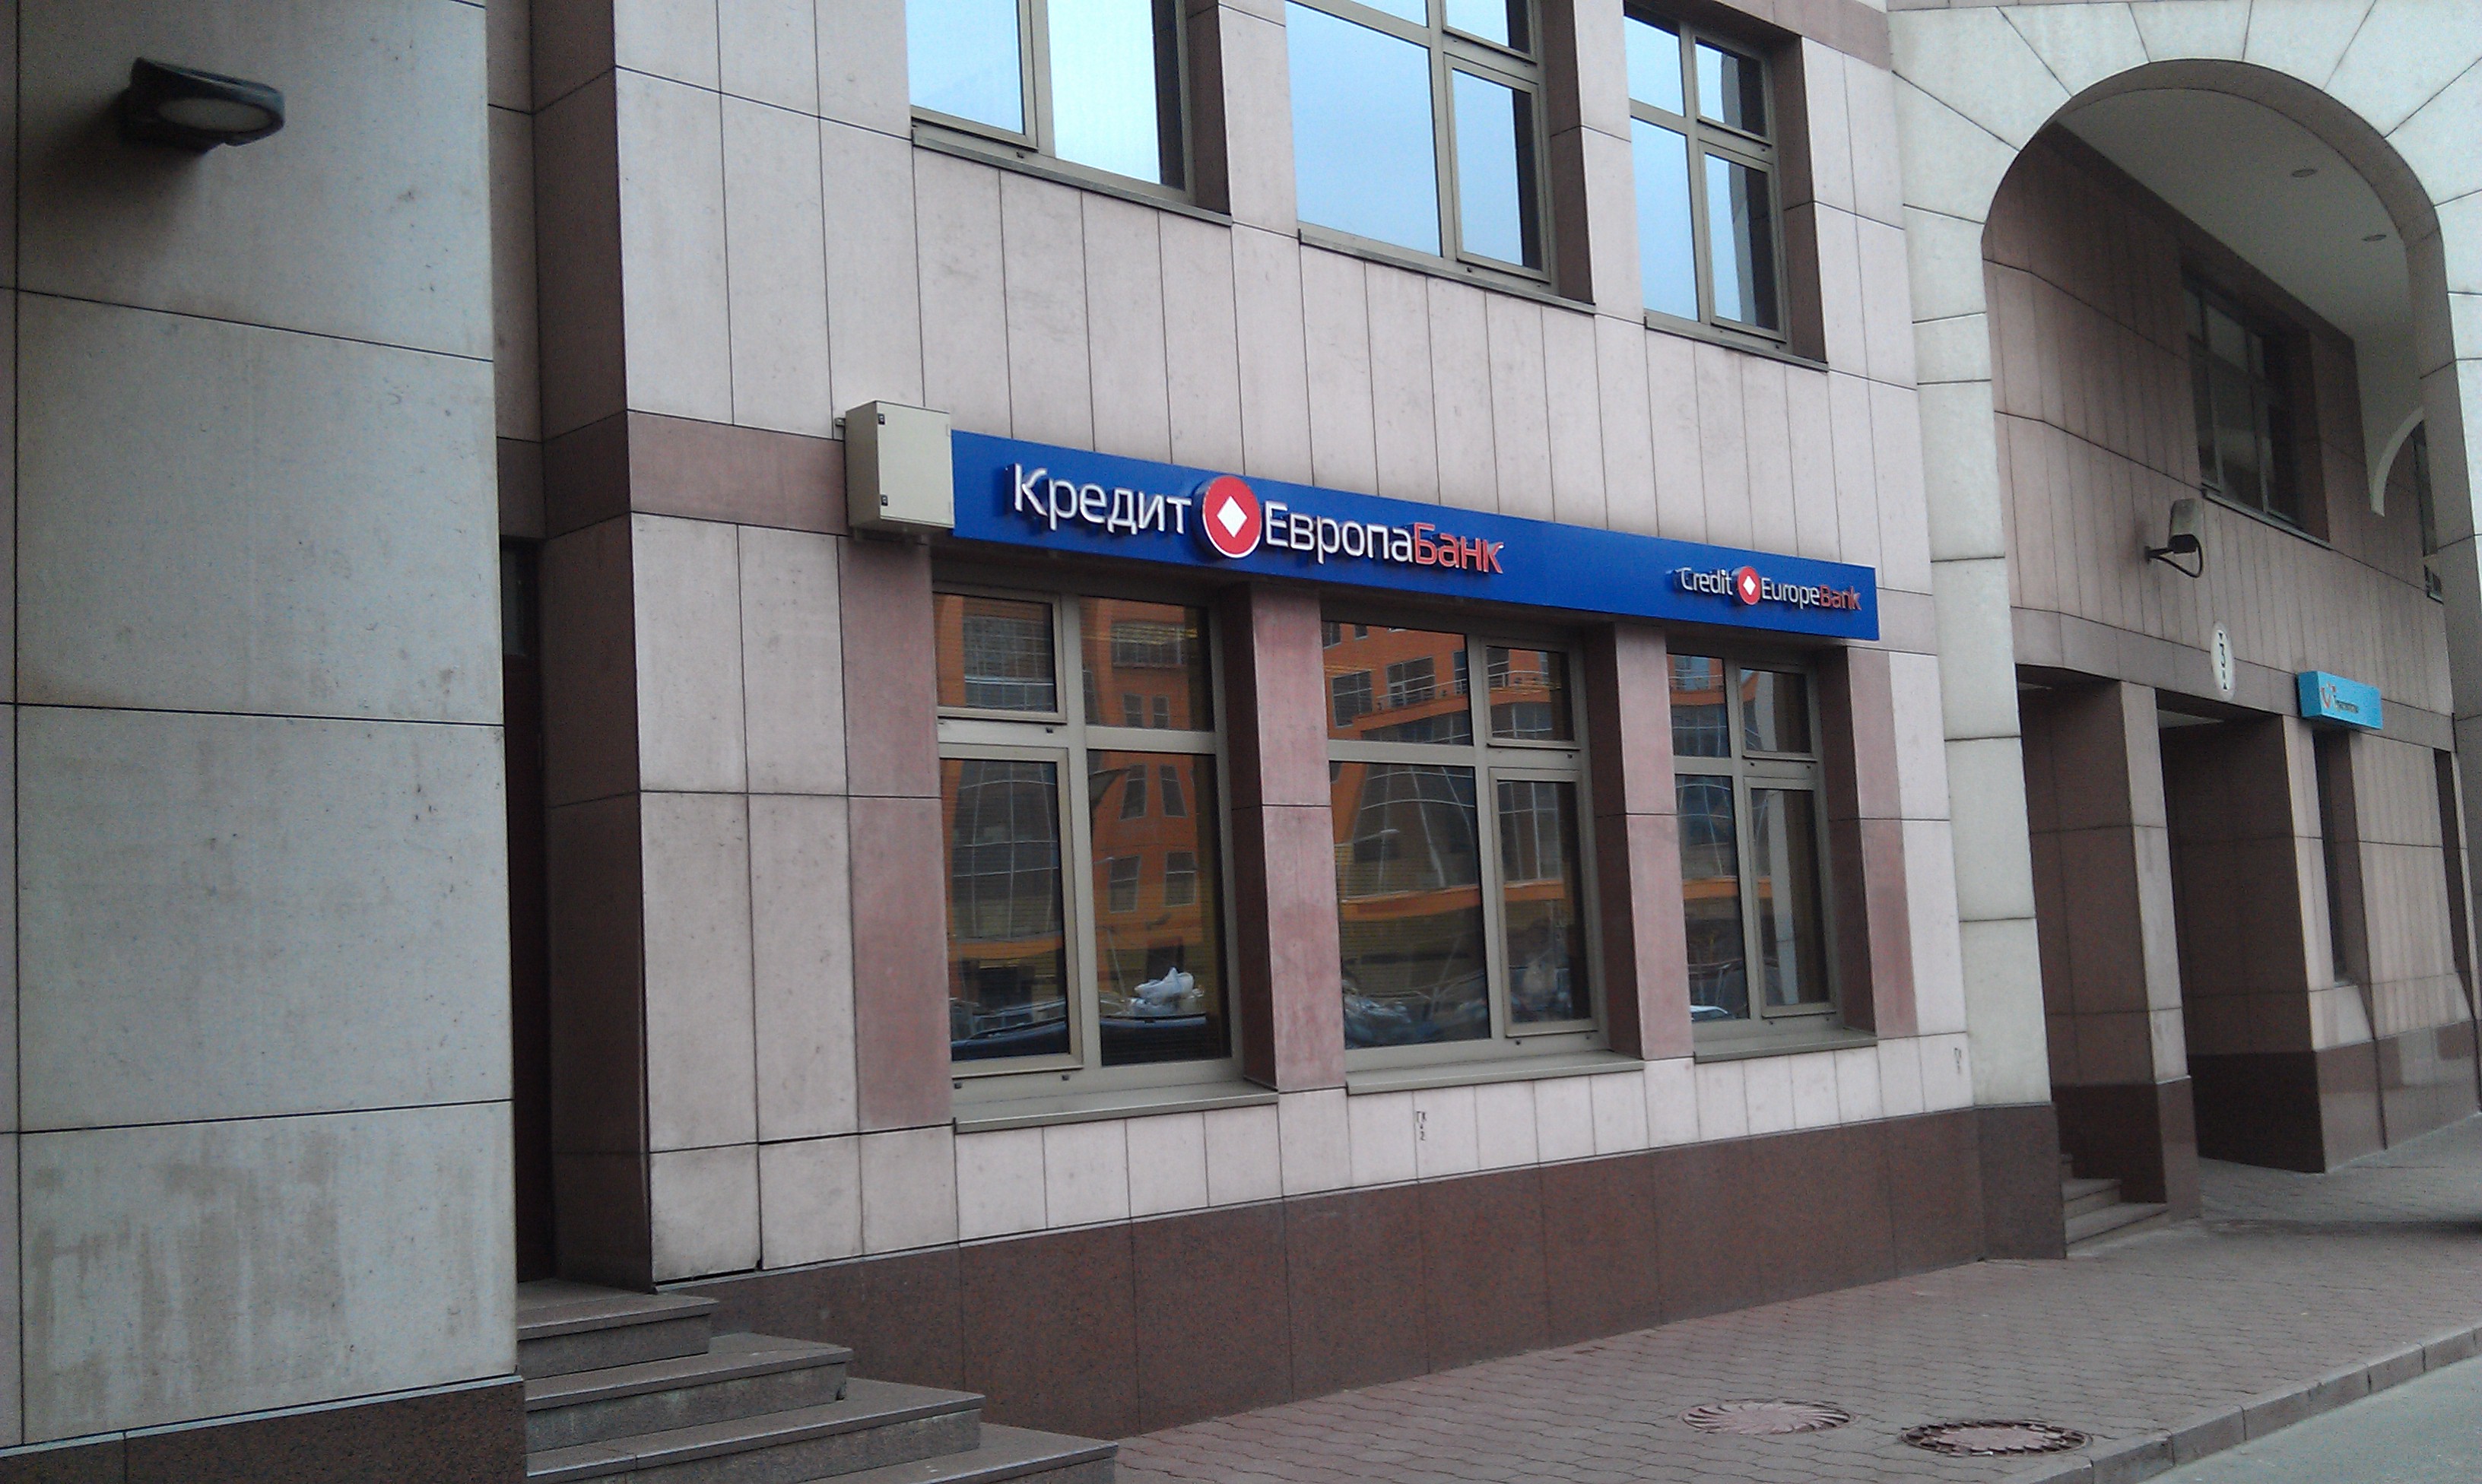 Кредиты ру москва. Европа банк. Банк Новосибирск. Кредит Европа банк фото. Отделение банка кредит Европа.